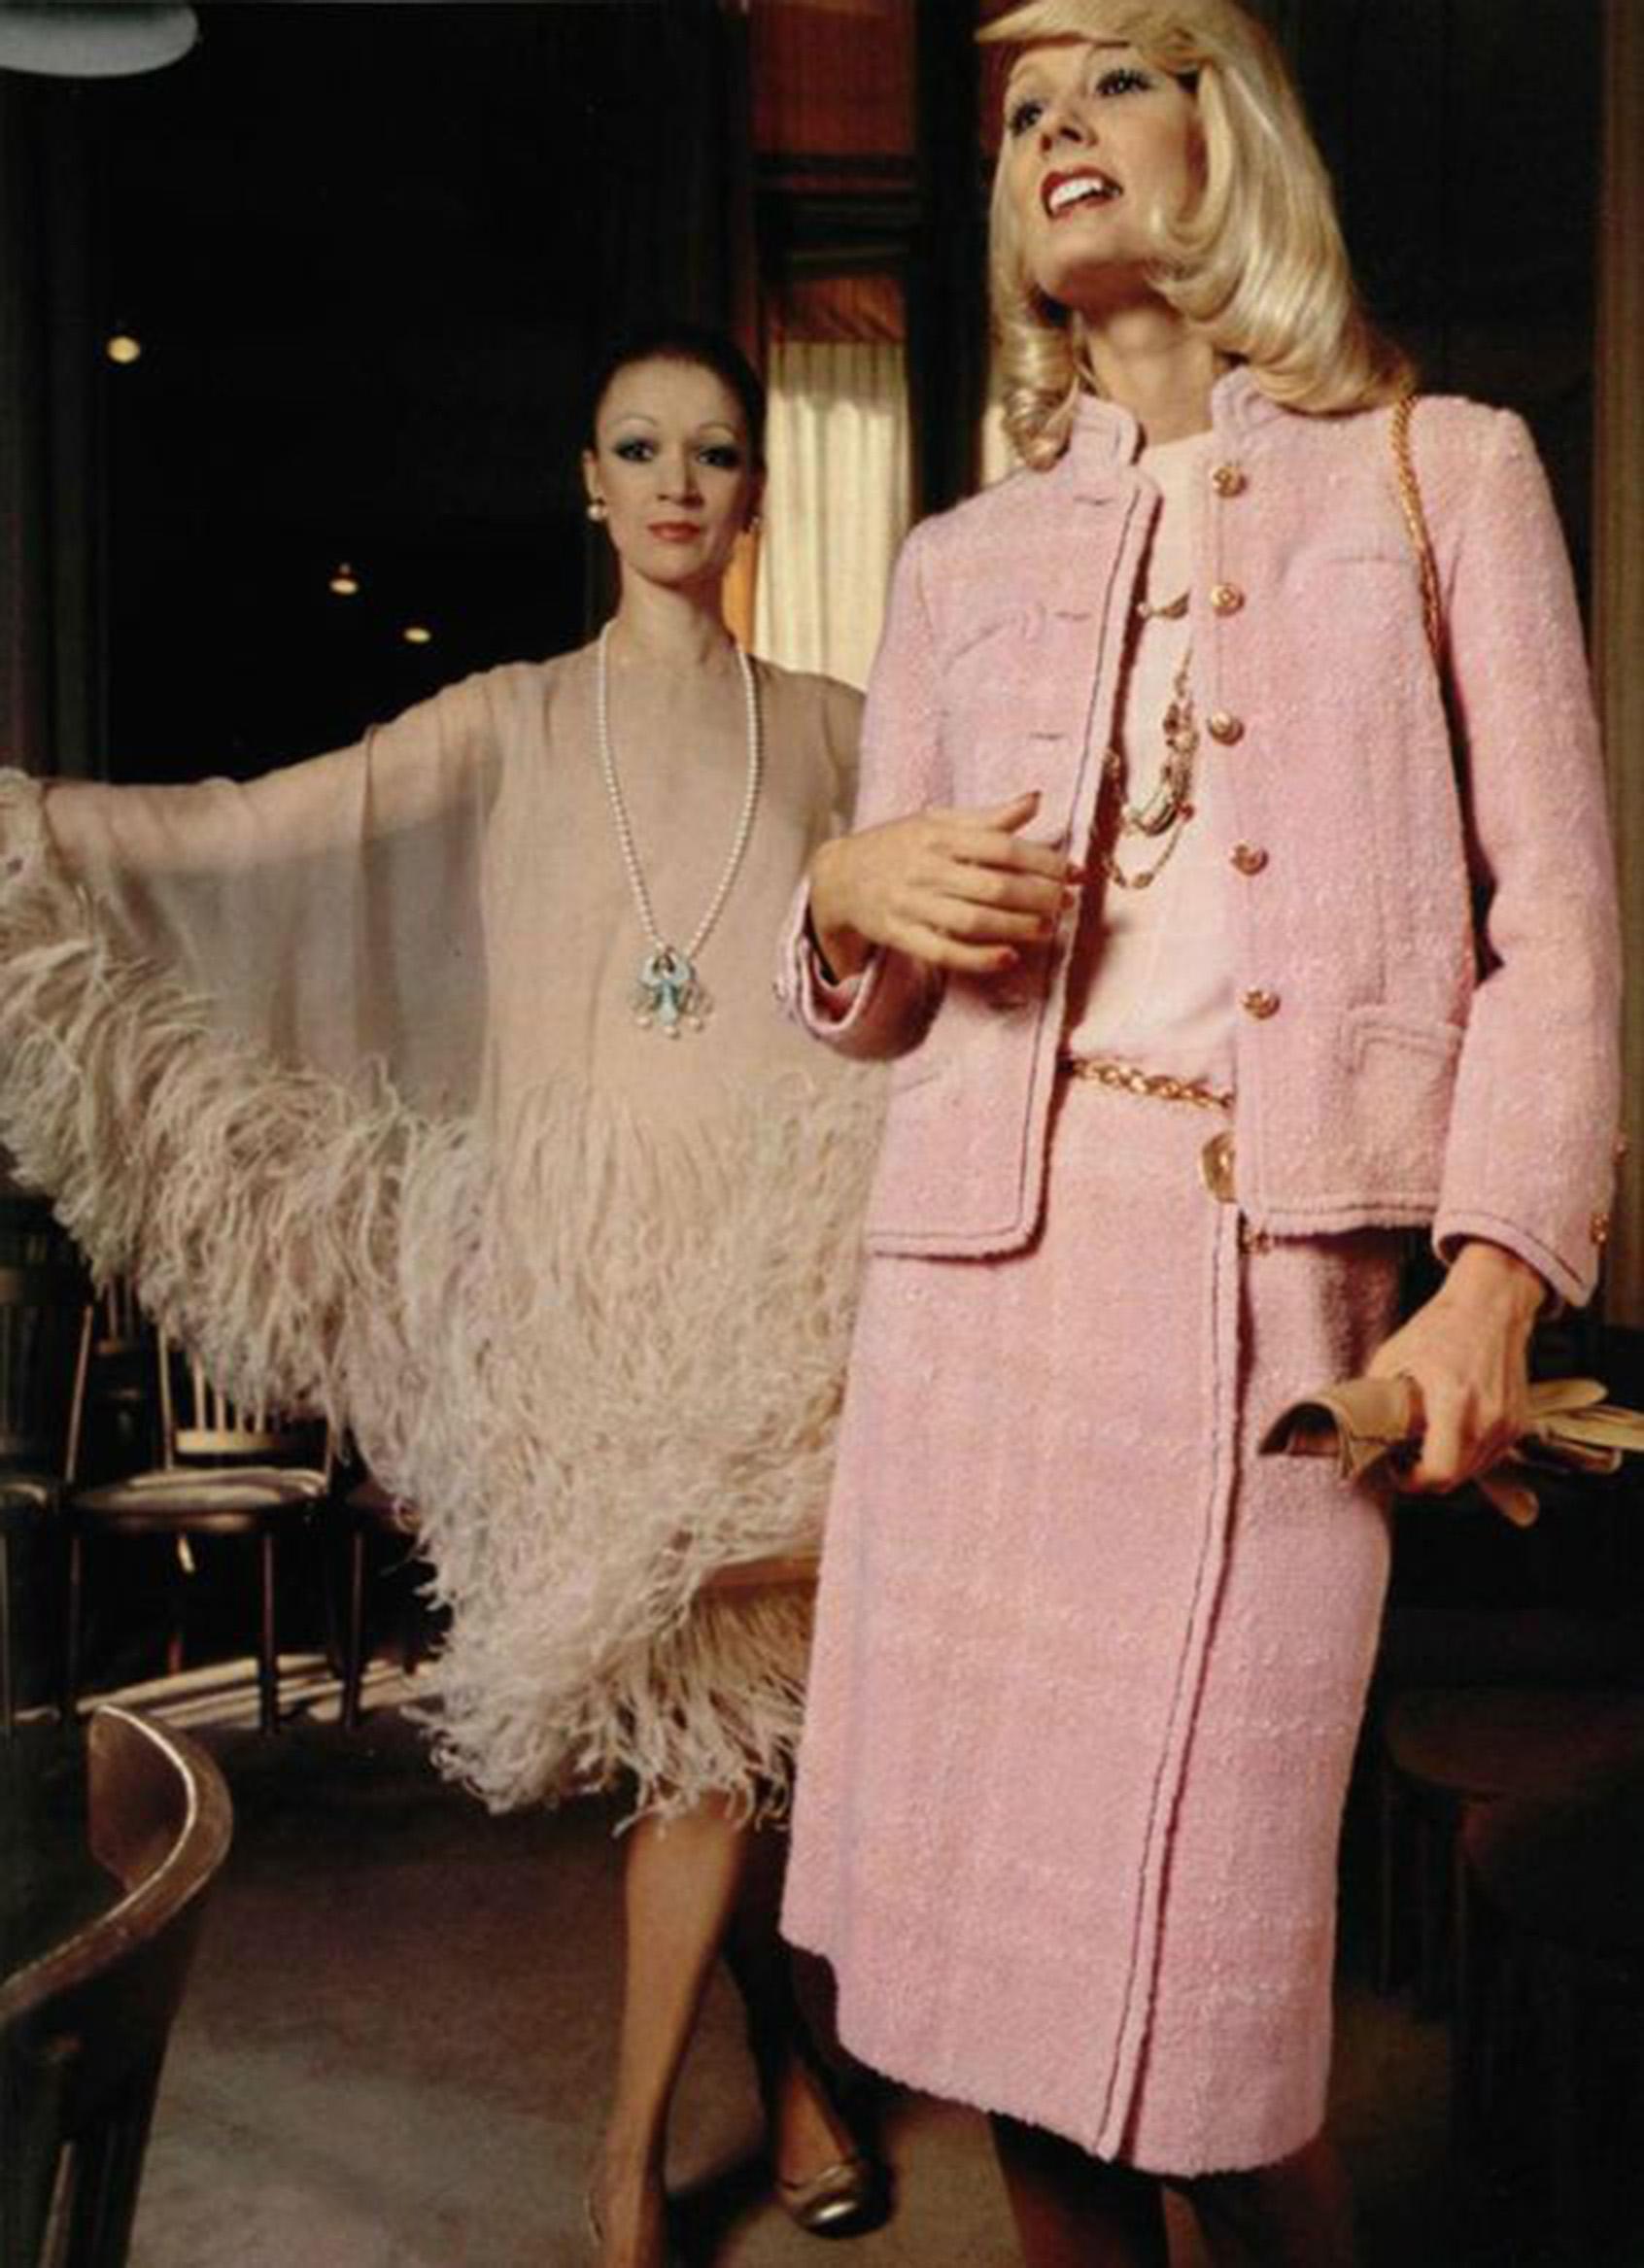 Ce tailleur trois pièces en laine rose, commandé par Chanel, est très convoité et immédiatement reconnaissable. Il date de l'automne-hiver 1973. Cette magnifique couleur rose bébé est si rare ! Ce magnifique ensemble est également très bien